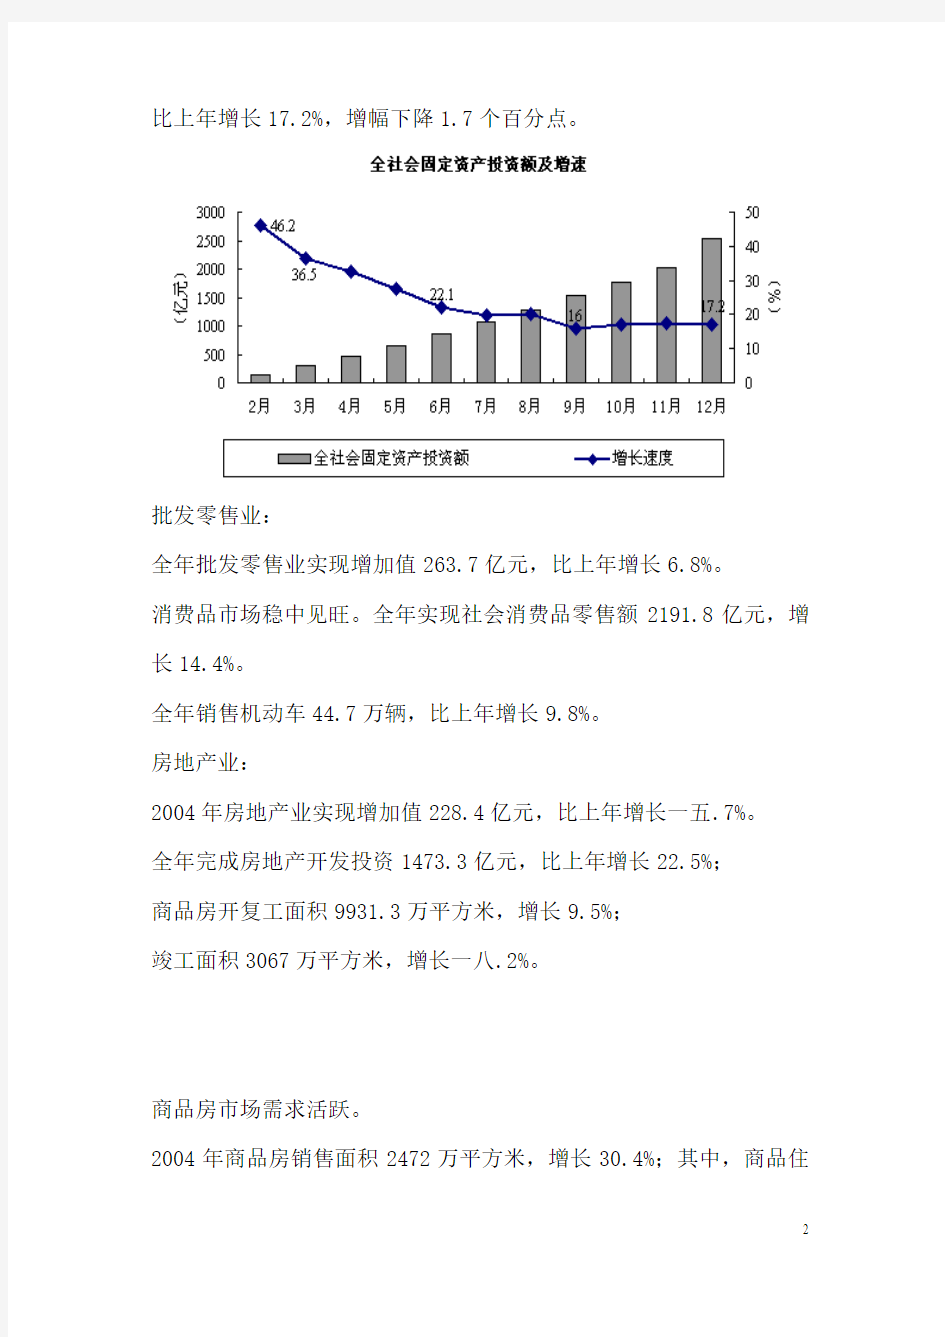 北京市经济现状及发展趋势市场分析